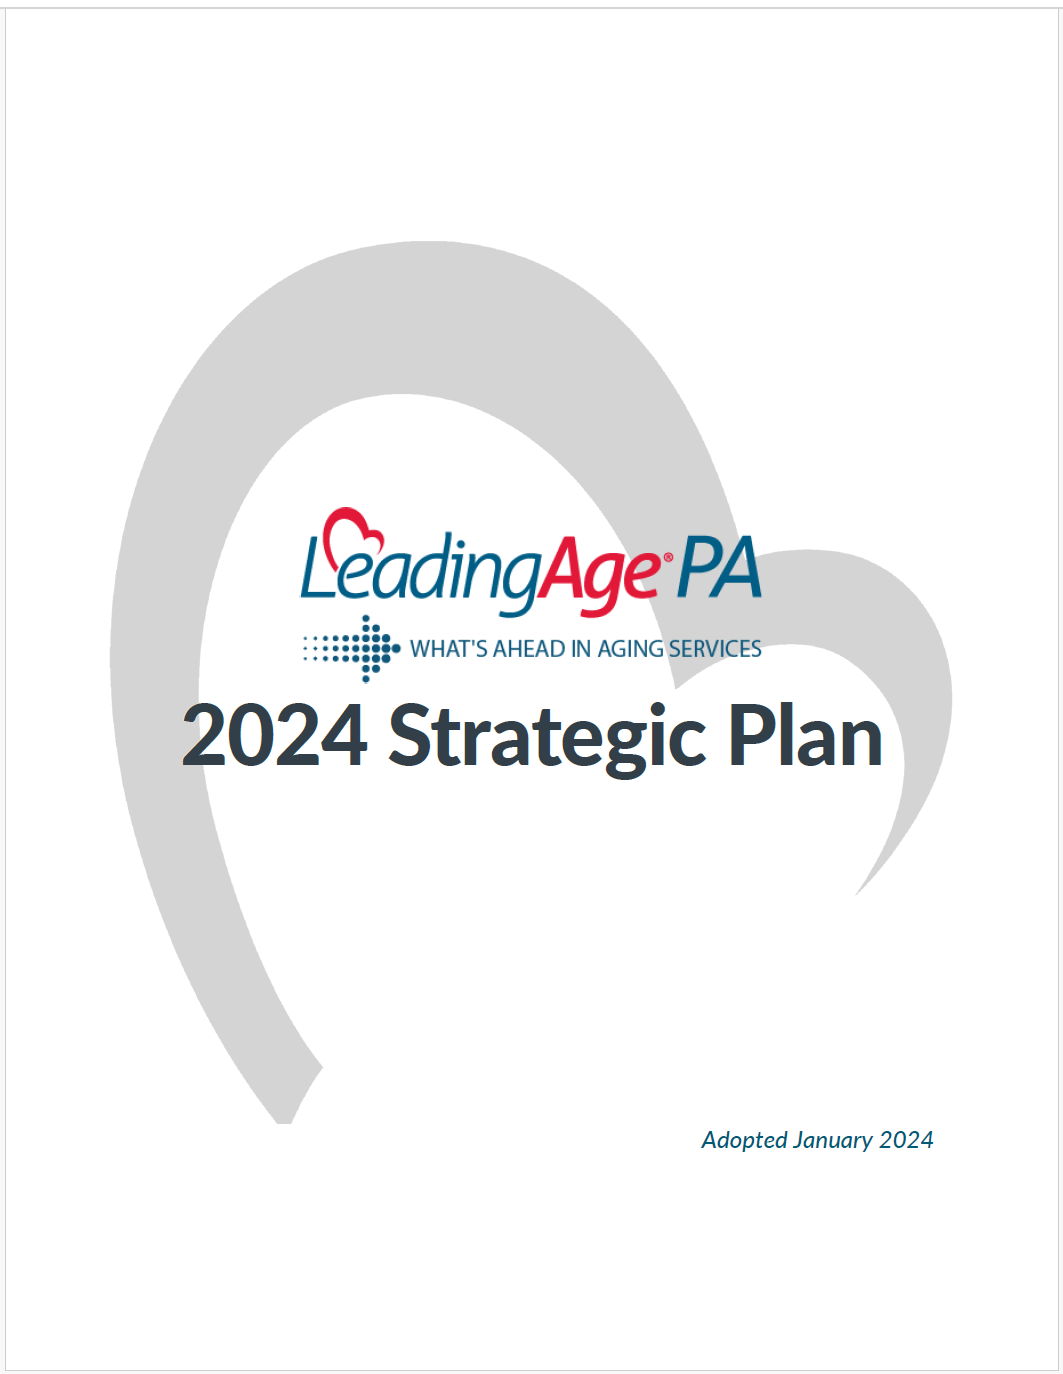 Thumbnail Image of LeadingAge PA's 2024 Strategic Plan document